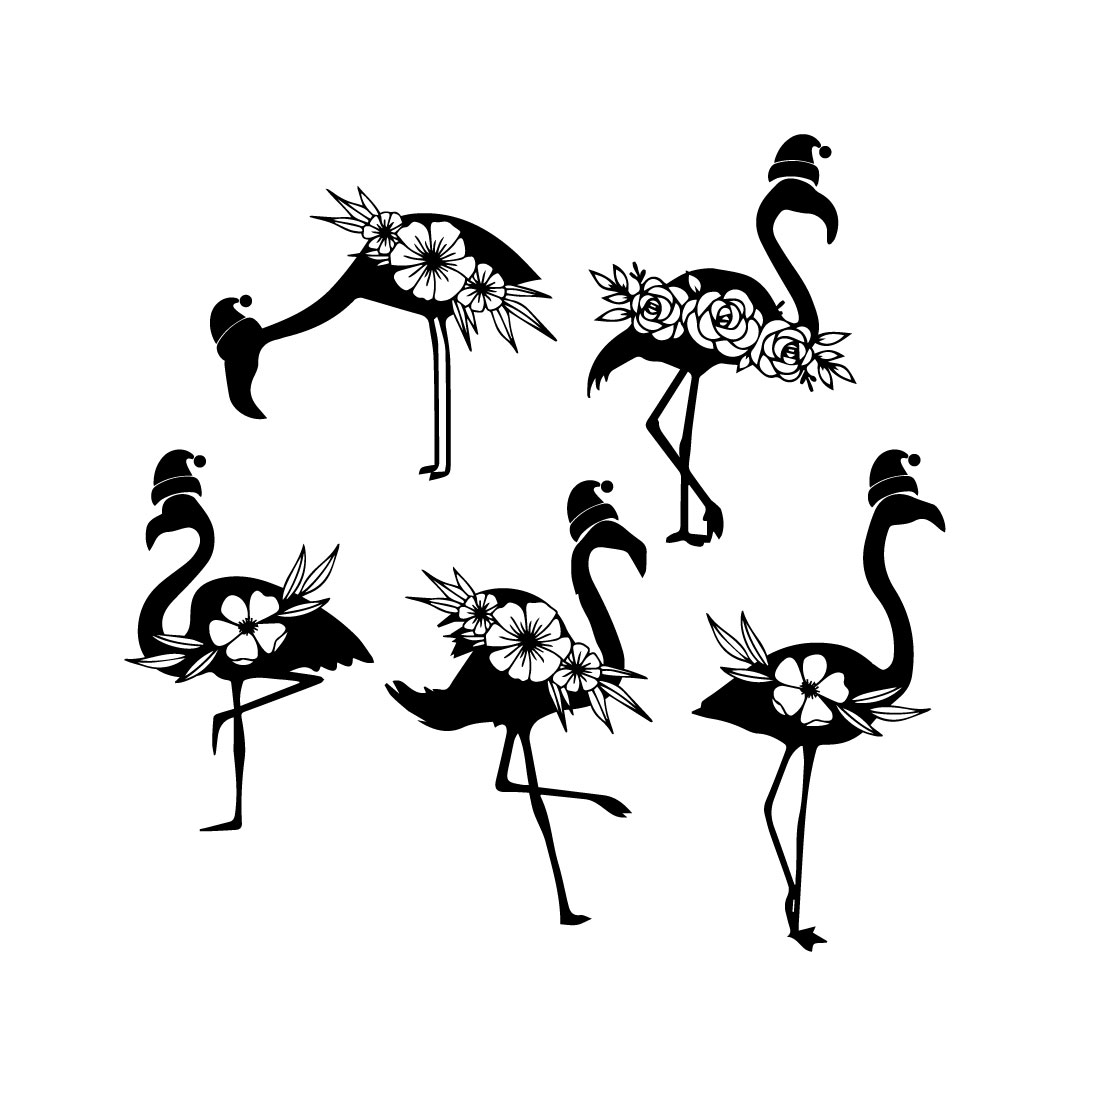 Pack of exquisite black images of flamingo